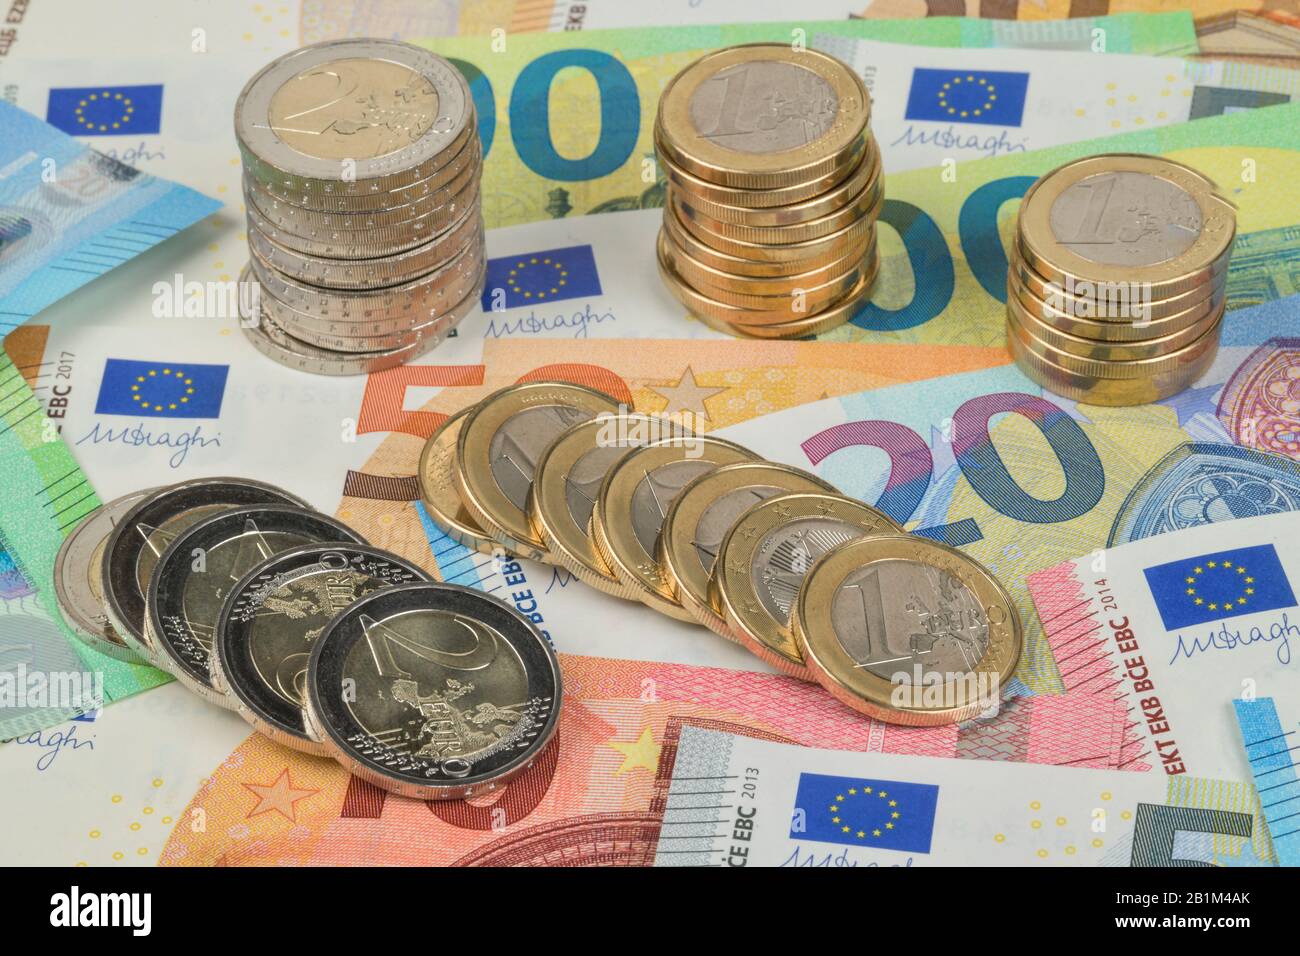 Stapel Centmünzen, Euromünzen, Euro-Geldscheine, Studioaufnahme Stock Photo